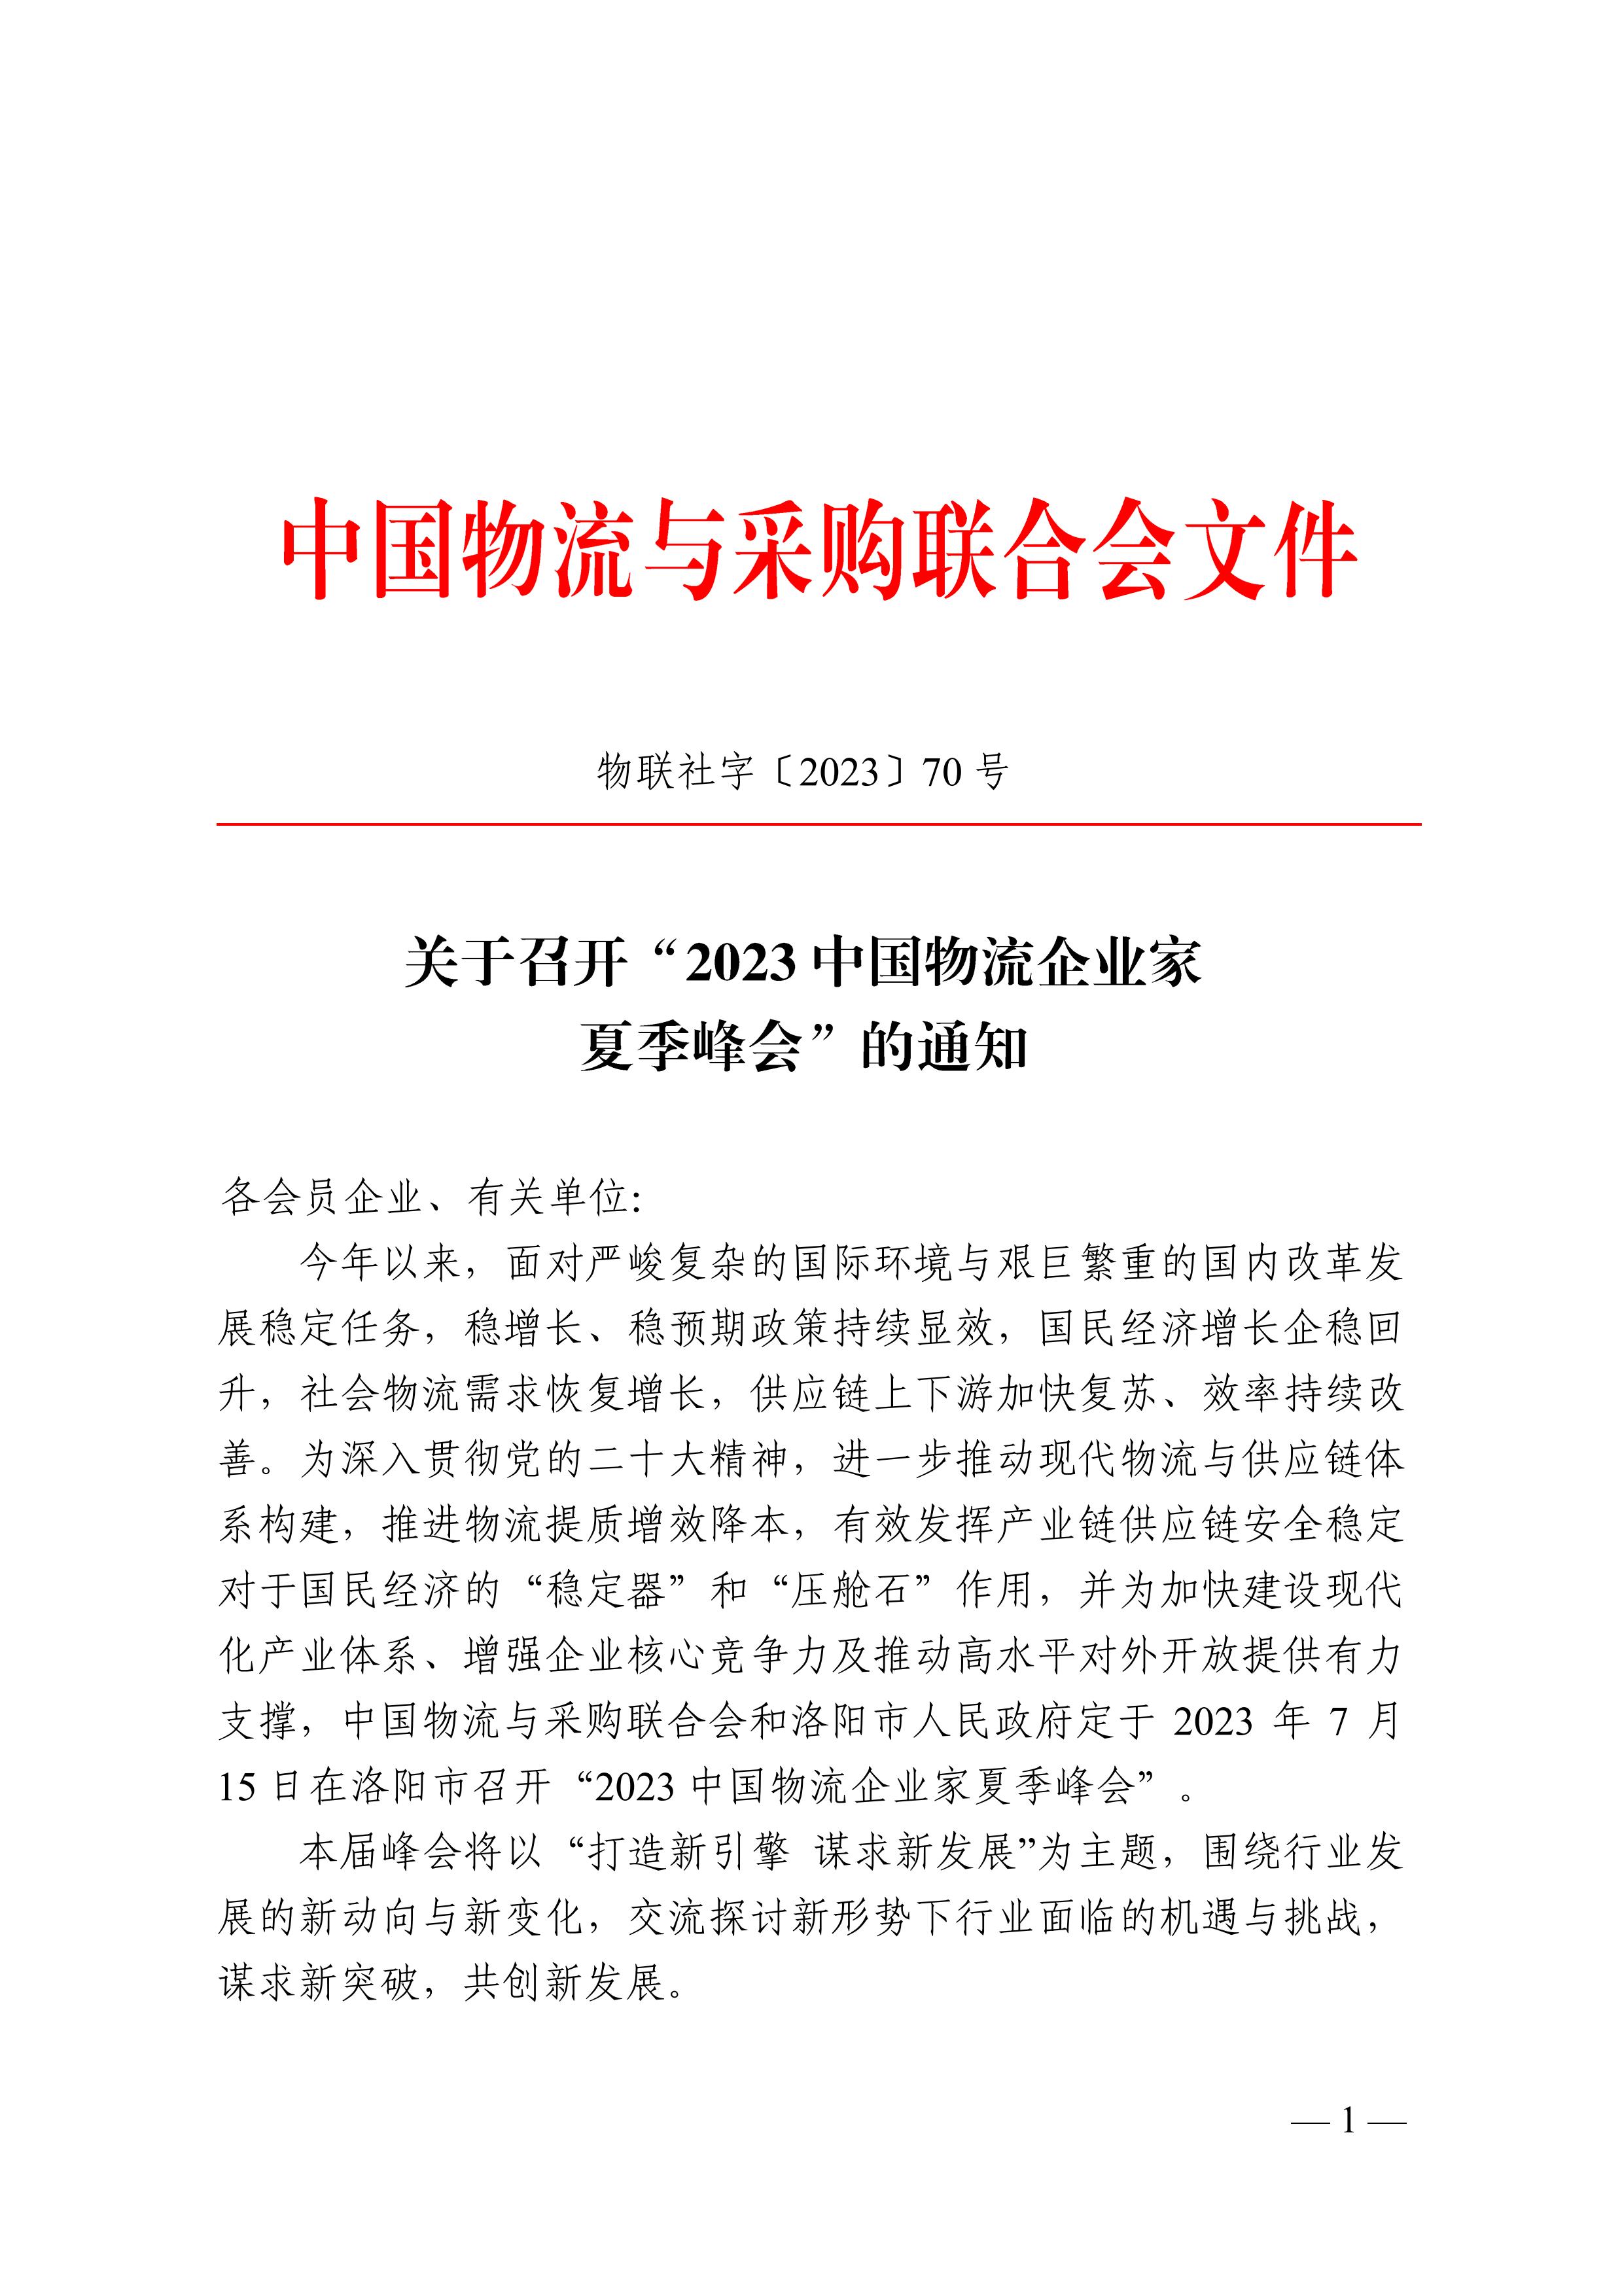 关于召开“2023中国物流企业家夏季峰会.文件通知pdf_01.jpg